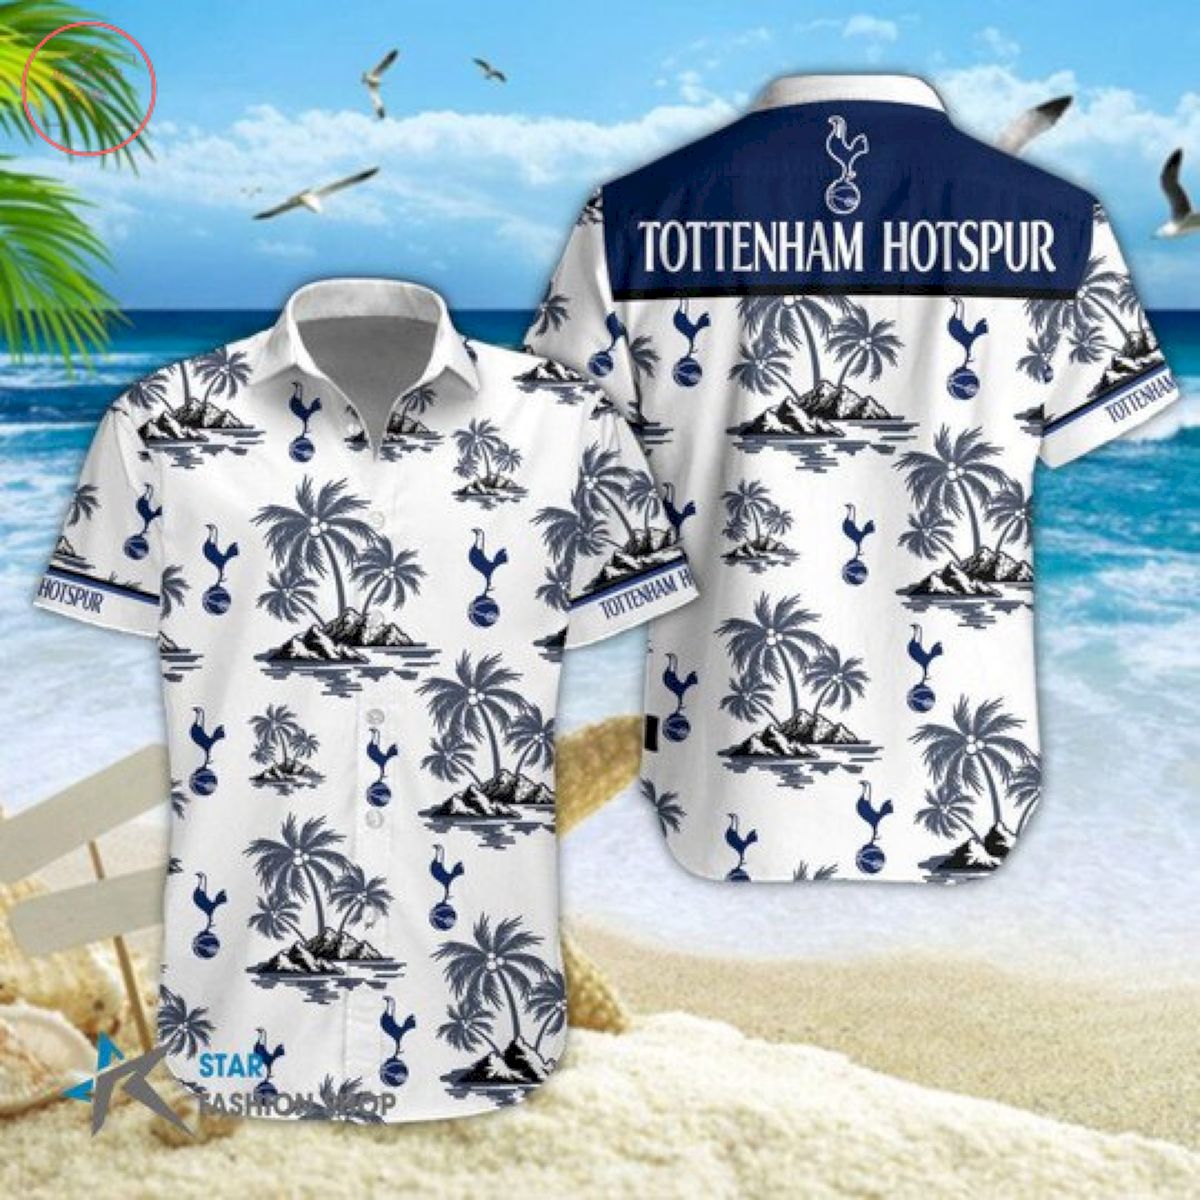 EPL Tottenham Hotspur Floral Hawaiian Shirts and Shorts